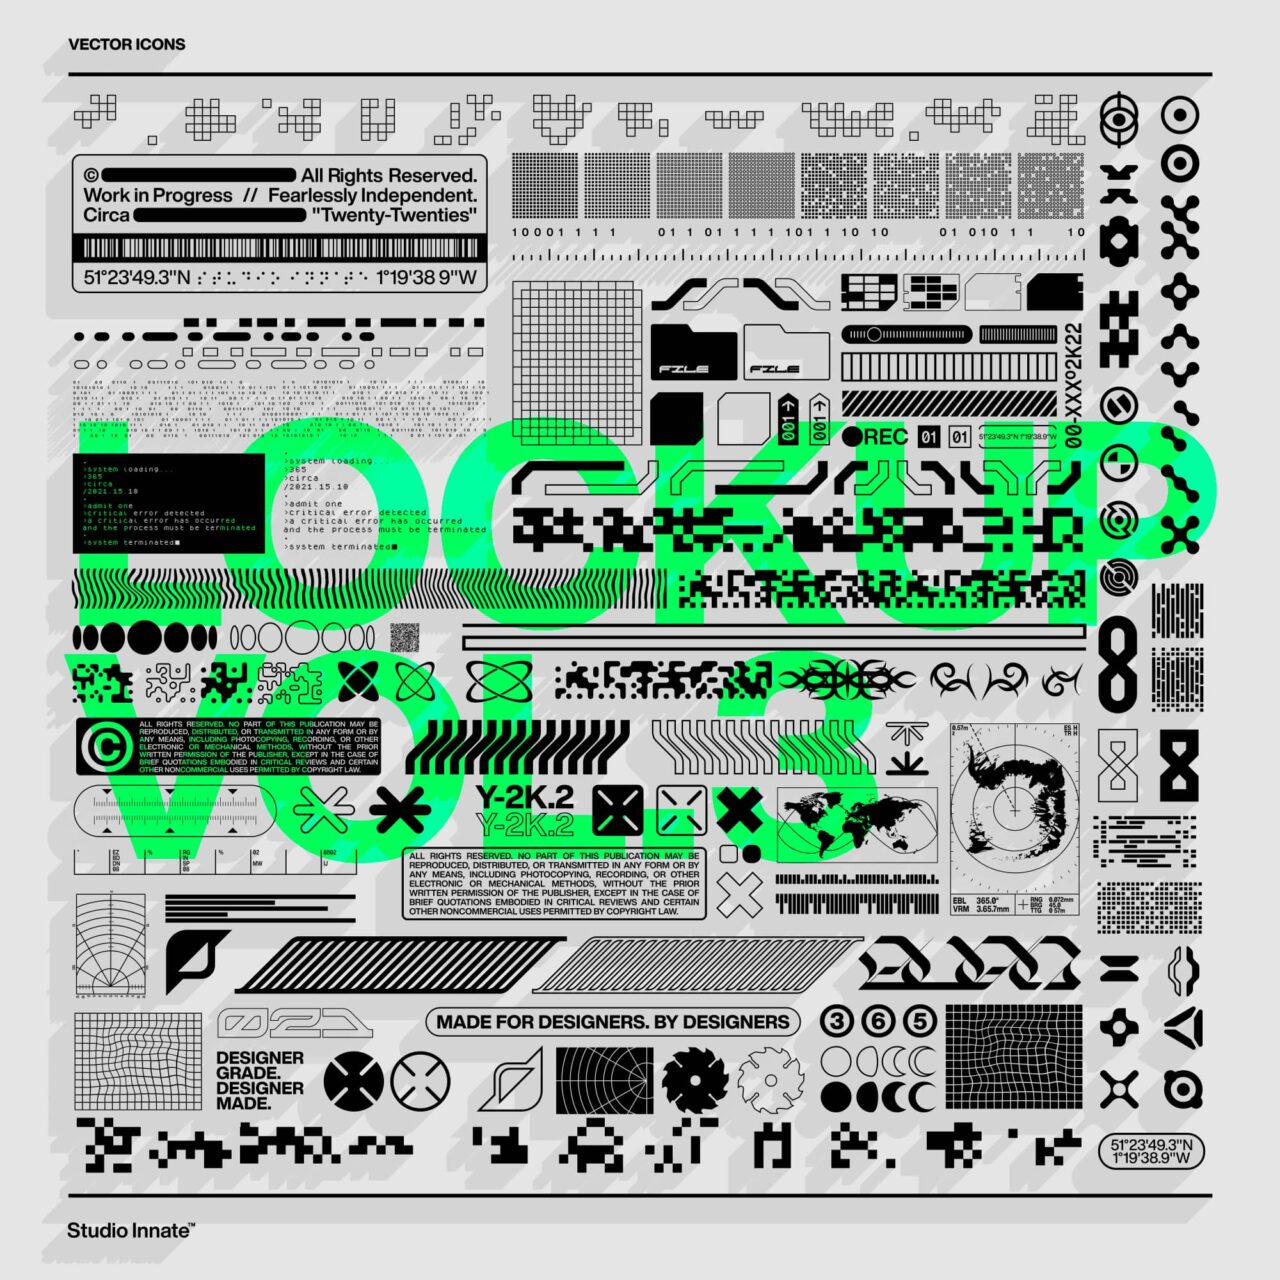 潮流复古酸性机能未来科幻嘻哈工业风图标图形矢量设计素材  Lockup Vector Pack. Vol3 by Studio Innate（9545）